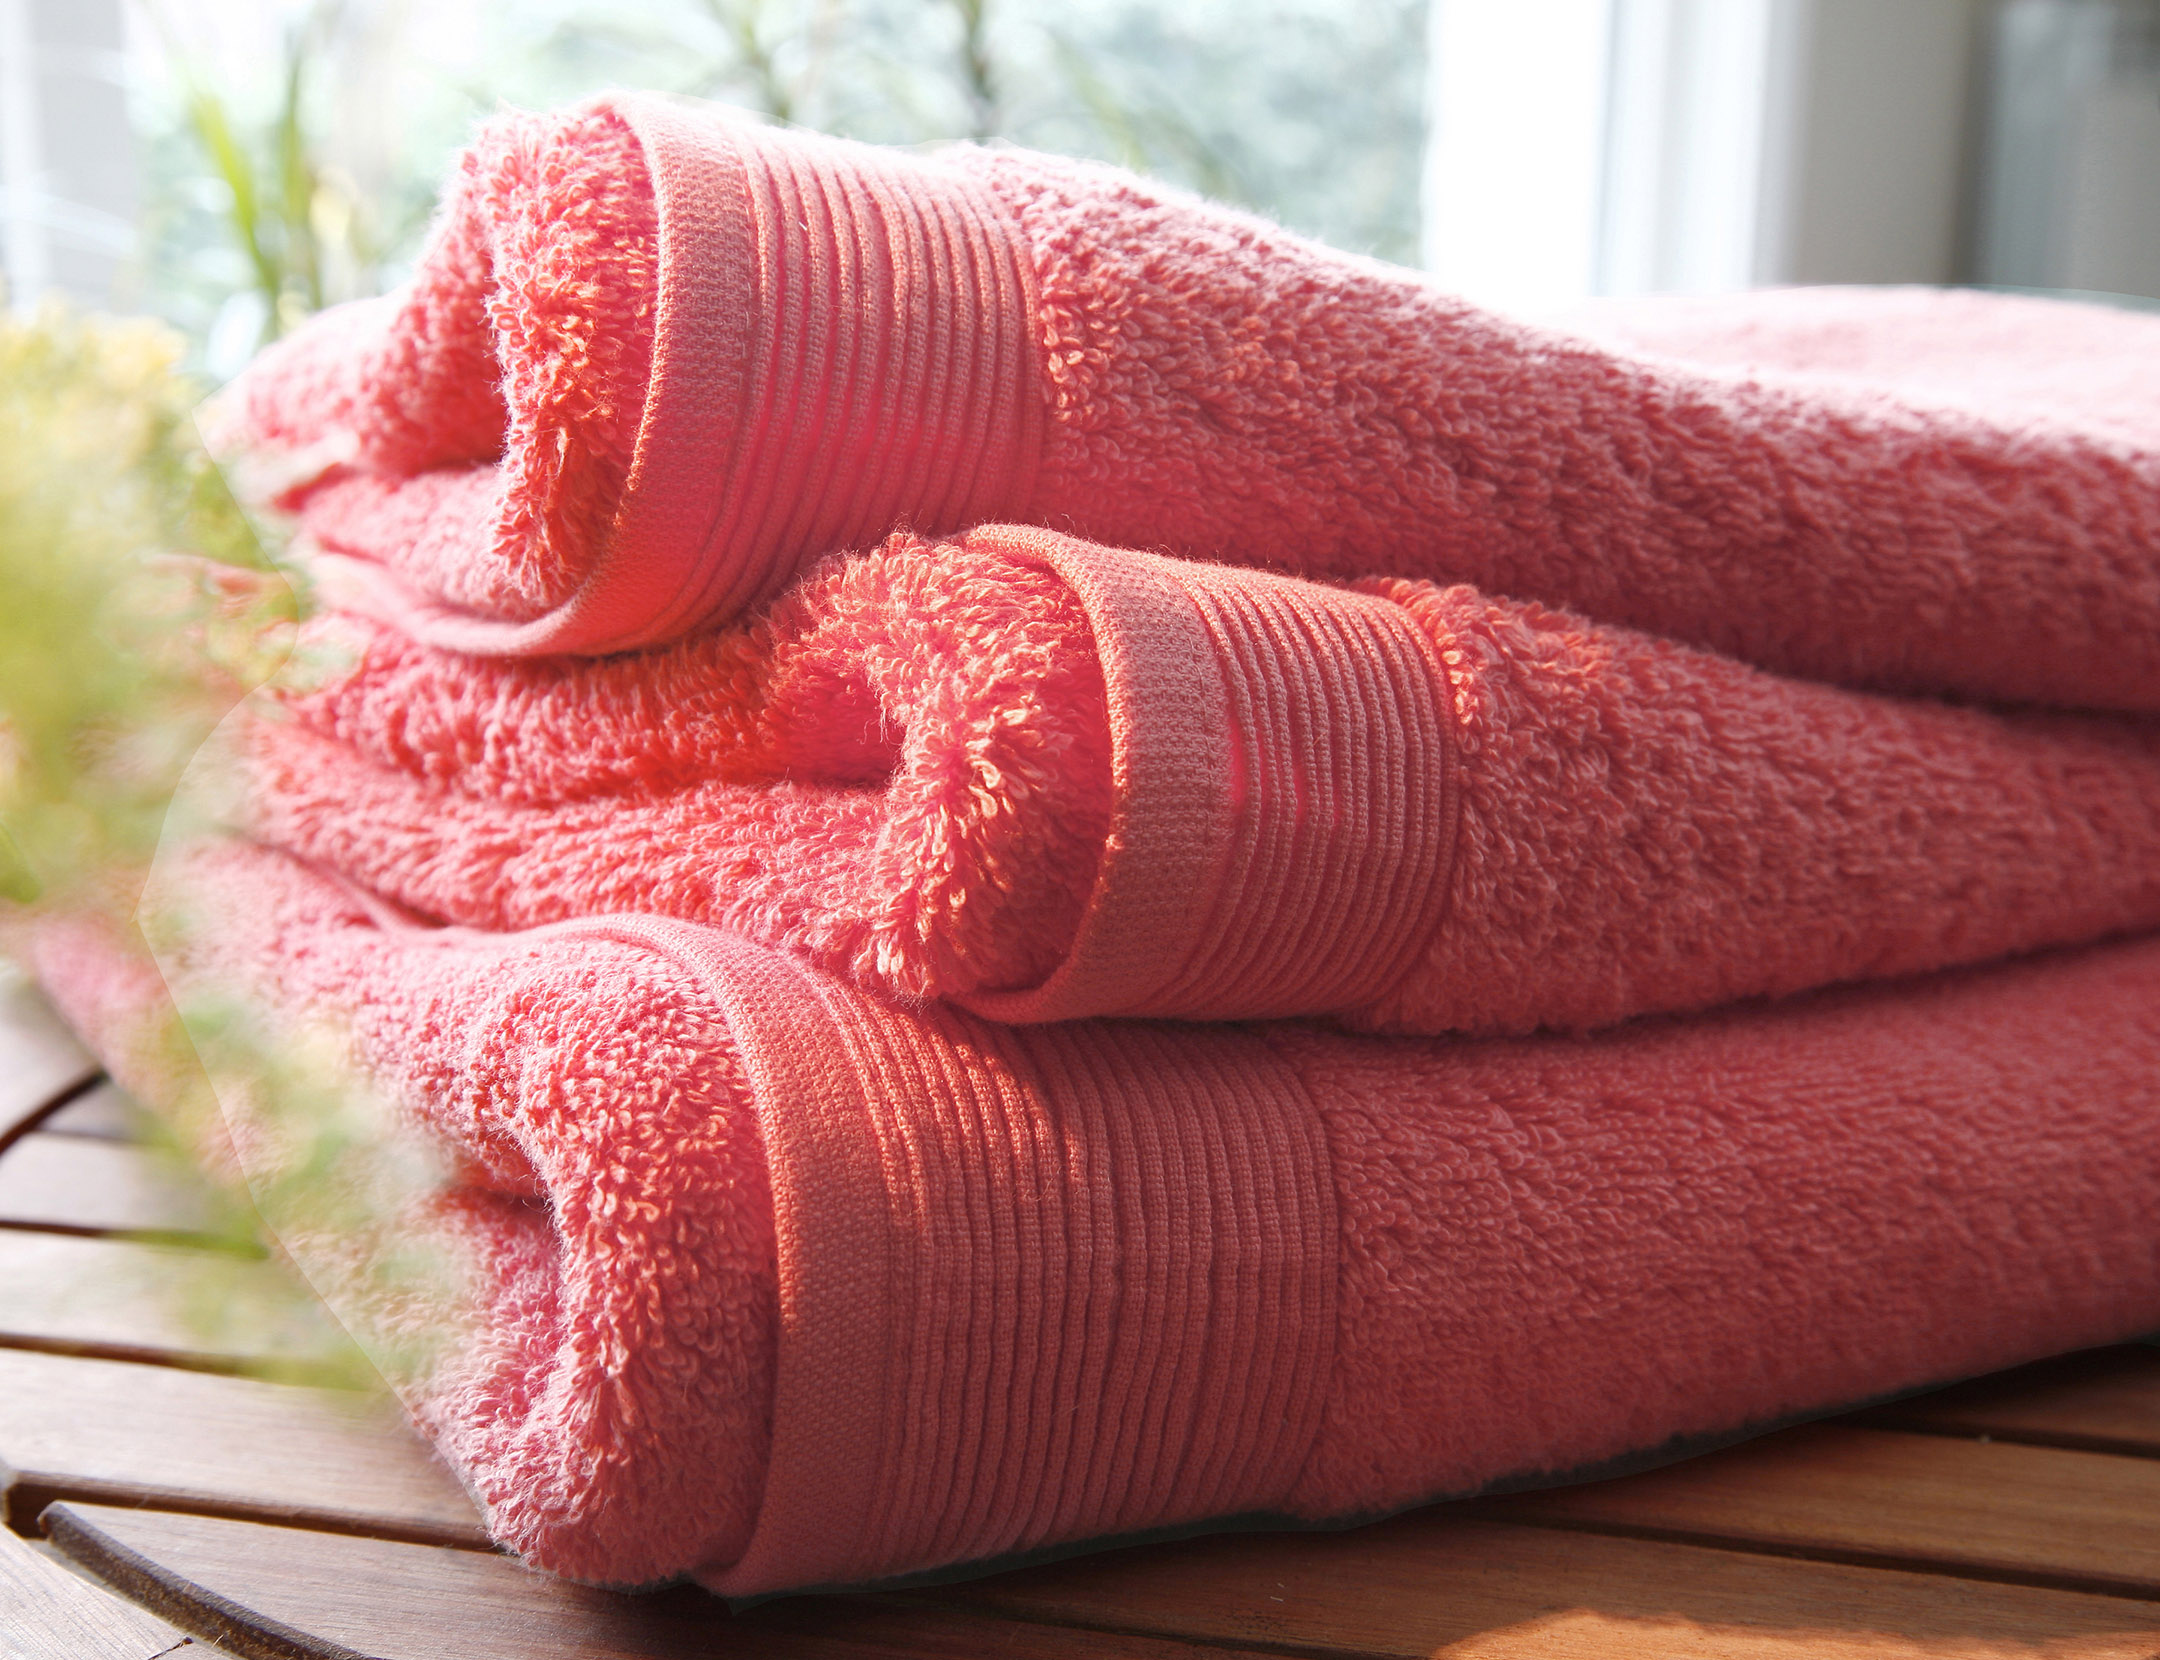 Качественные полотенца махровые